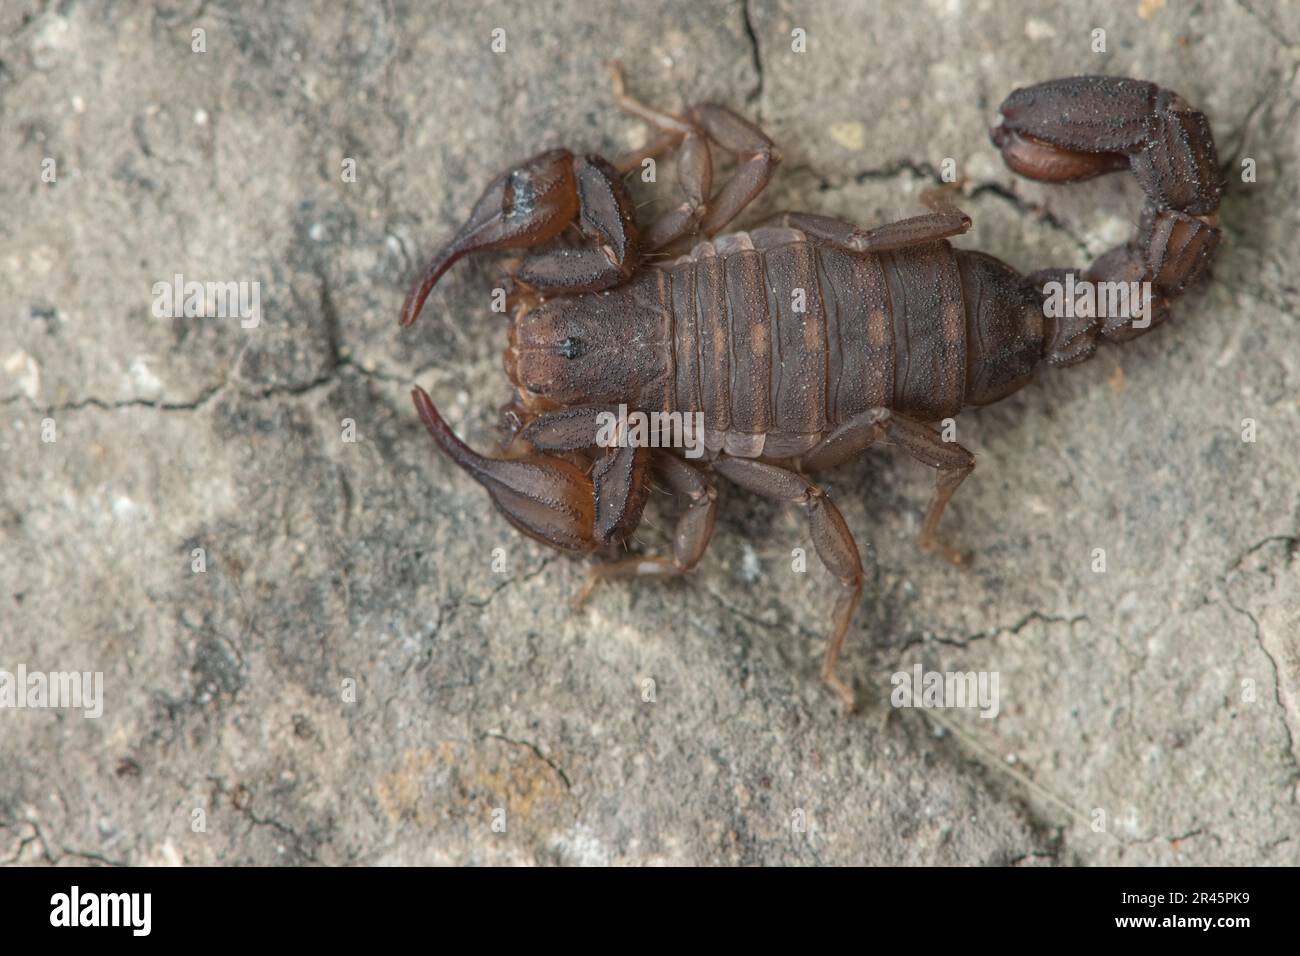 Catalinia thompsoni, une petite espèce endémique de scorpion de l'île de Santa Cruz dans le parc national des îles Anglo-Normandes, Californie, États-Unis. Banque D'Images